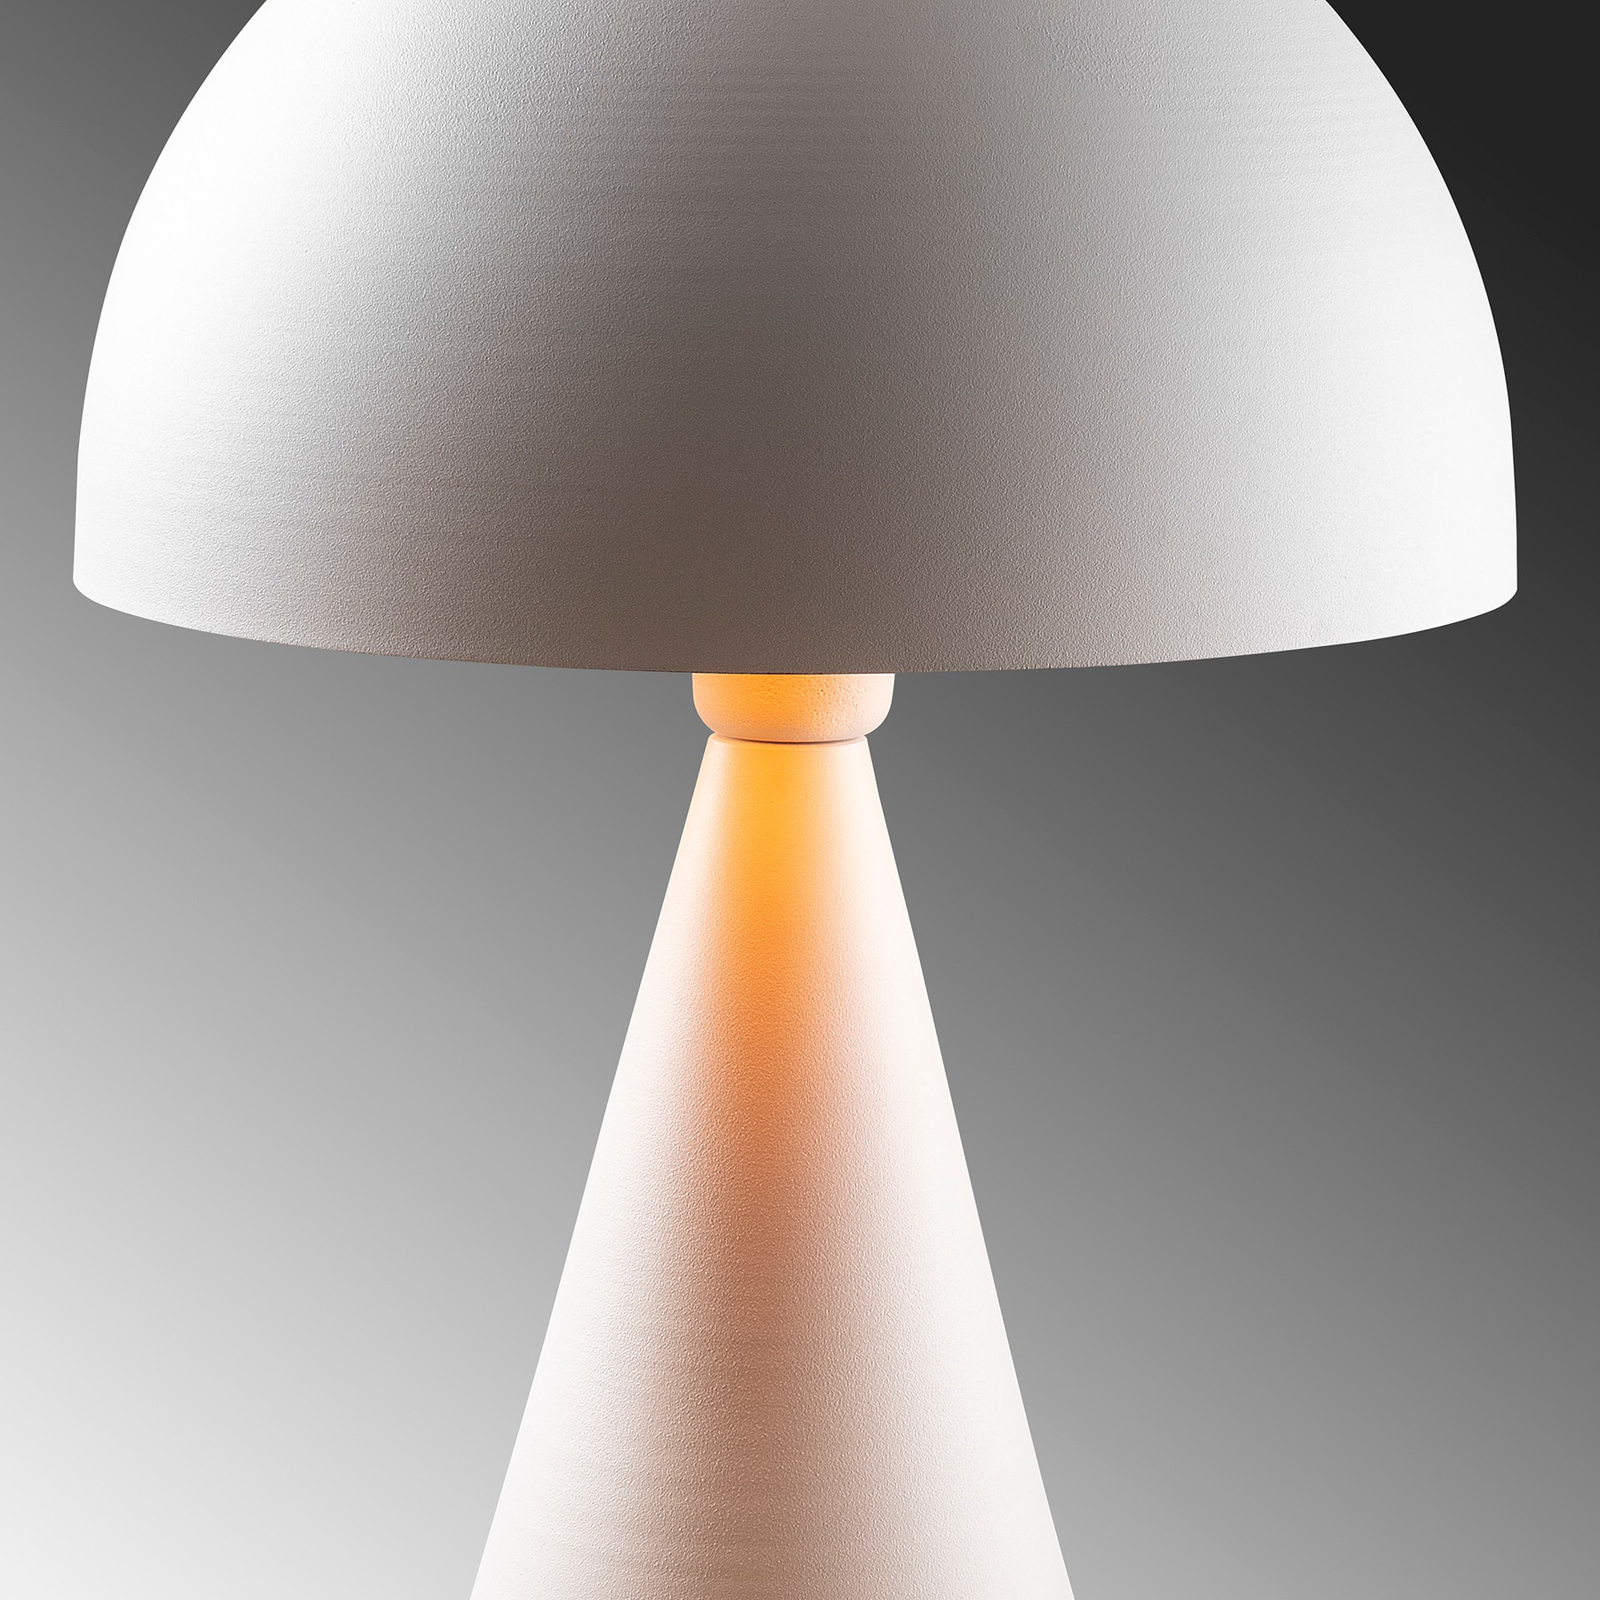 Настолна лампа Dodo 5052, височина 52 см, бяла